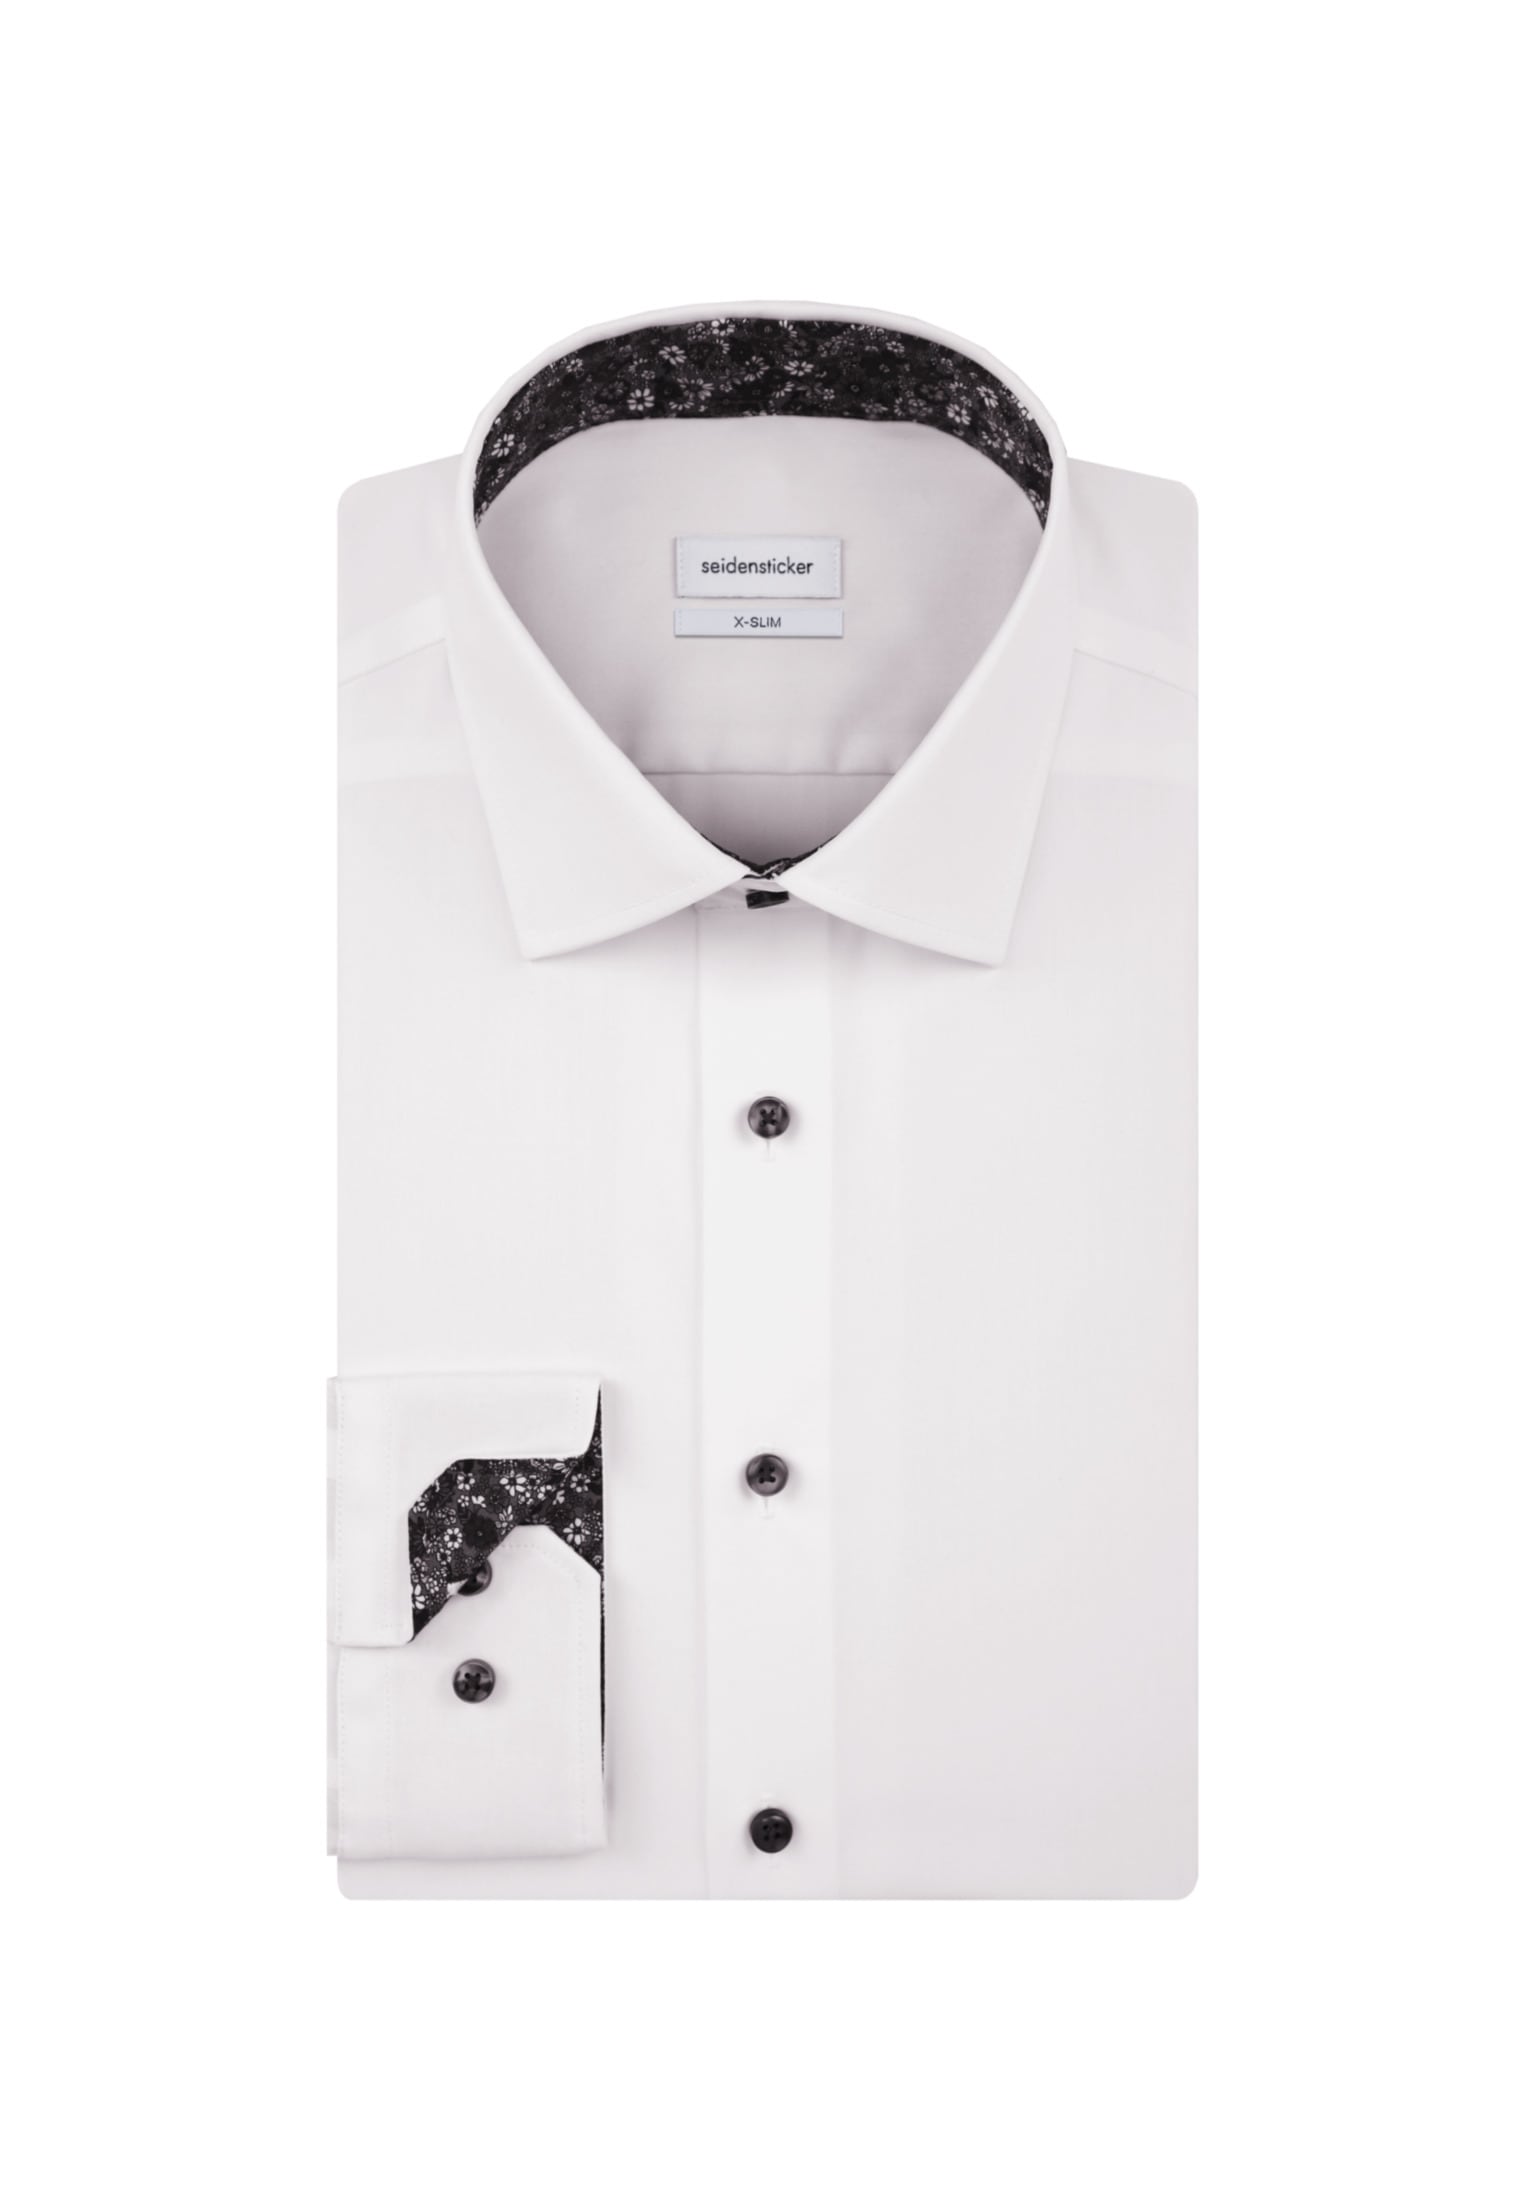 Kentkragen Online X-Slim seidensticker »X-Slim«, Extra im Arm OTTO Shop Businesshemd Uni langer